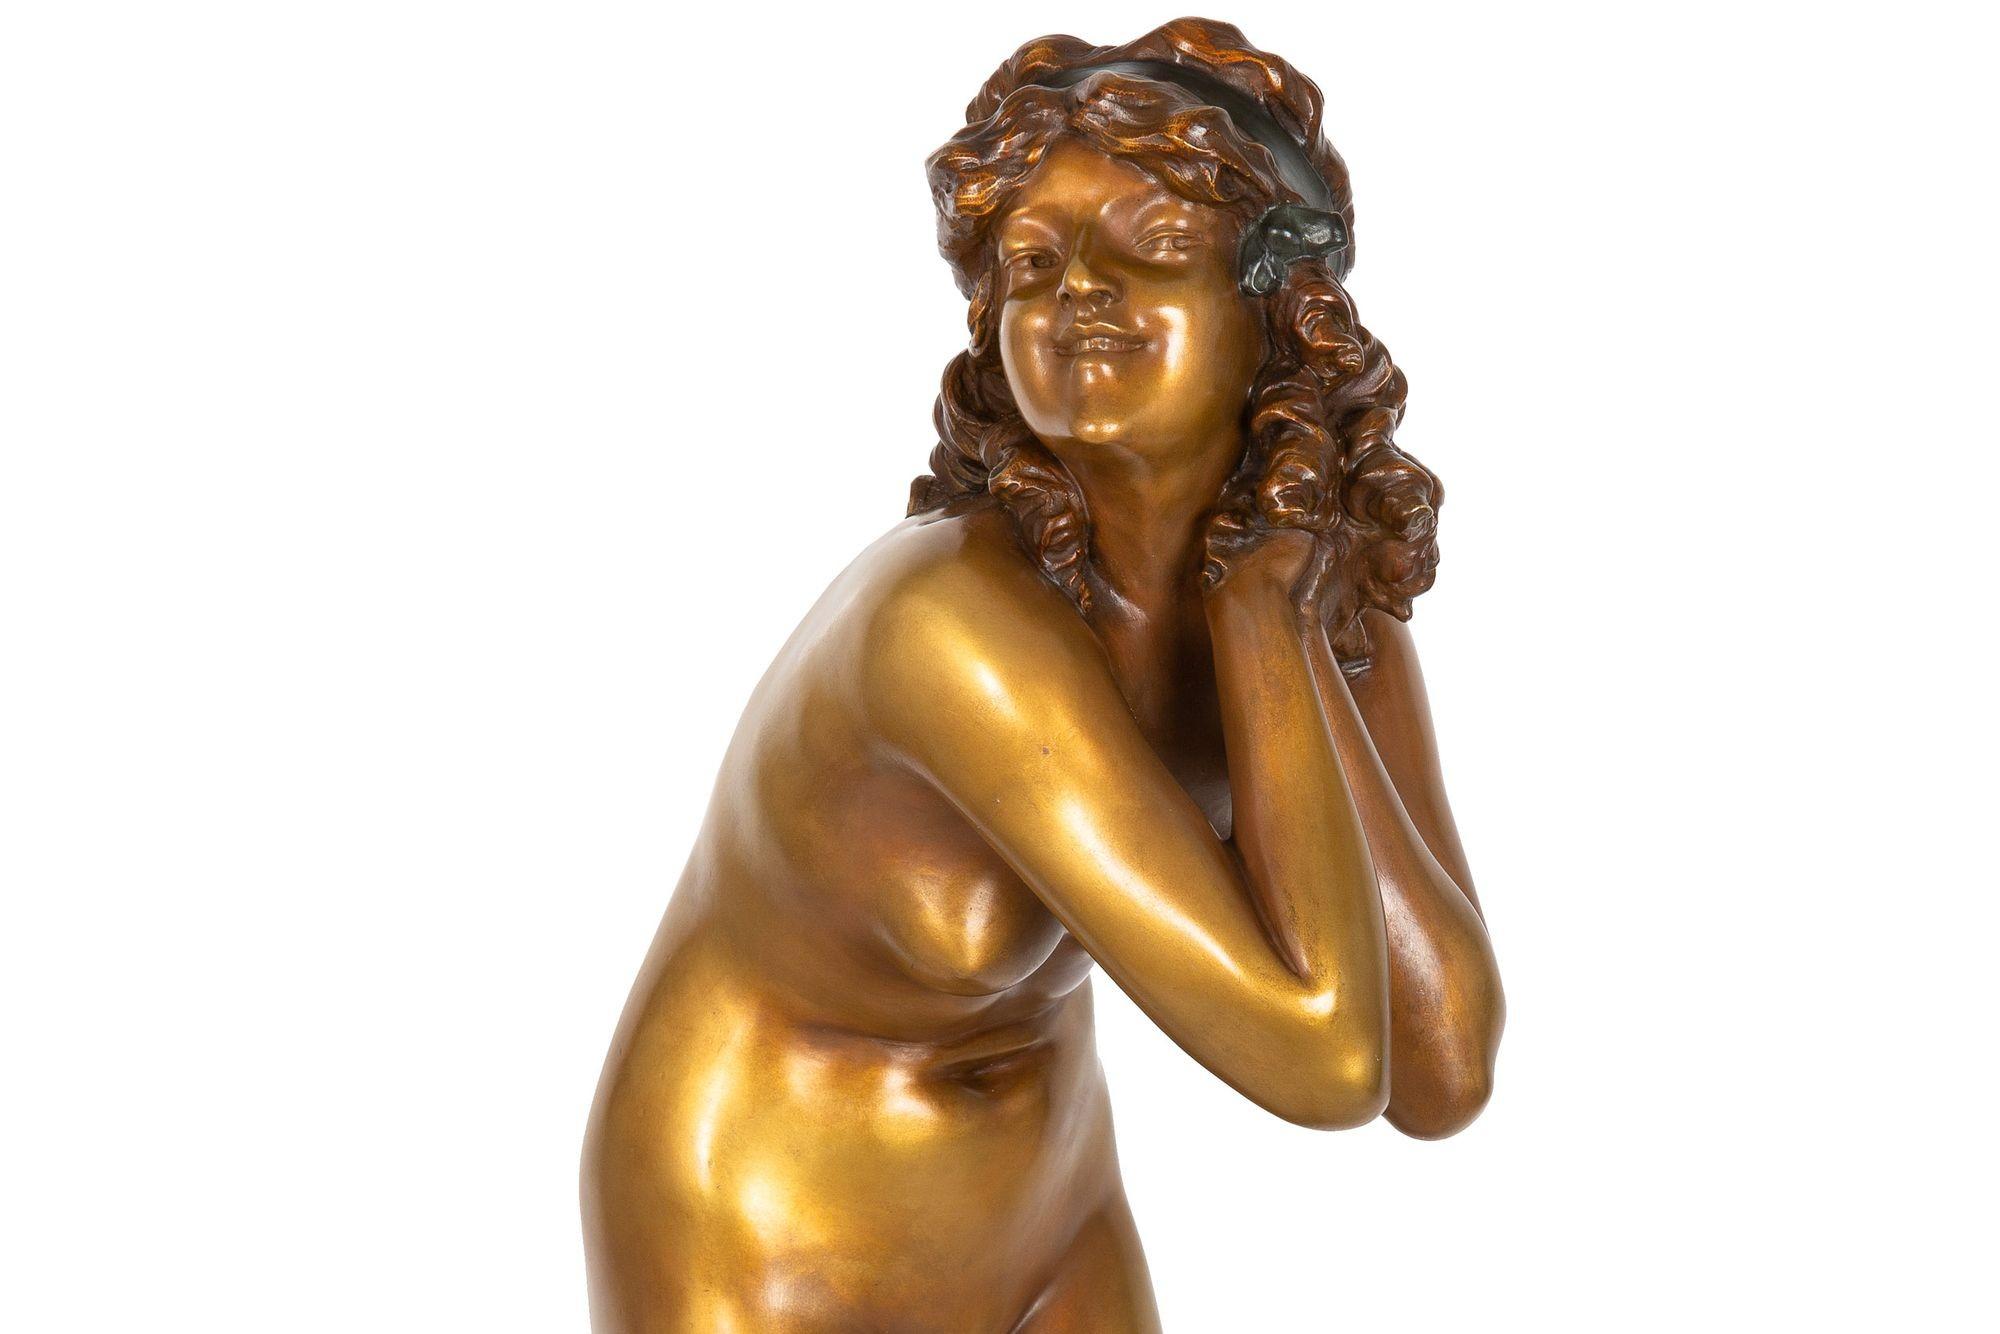 Rare Art Deco Bronze Sculpture “Mischievous” by Paul Philippe For Sale 1